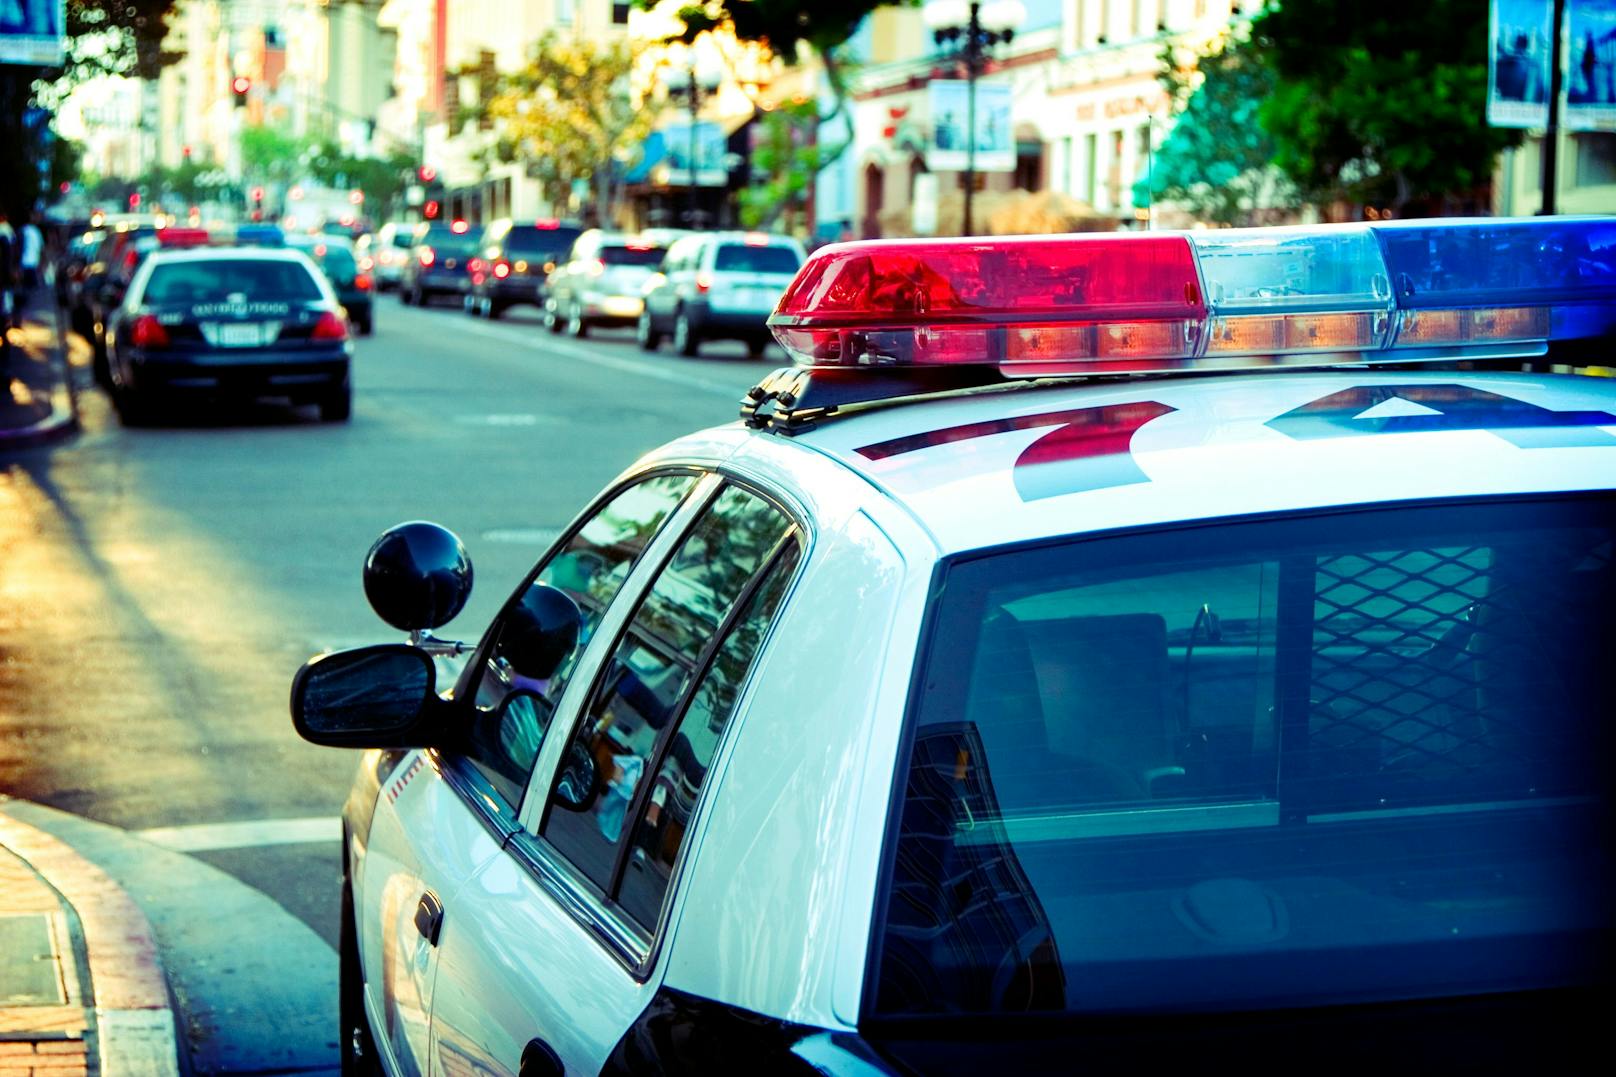 Ein Polizeiauto in einer Stadt in Kalifornien, USA. Symbolbild